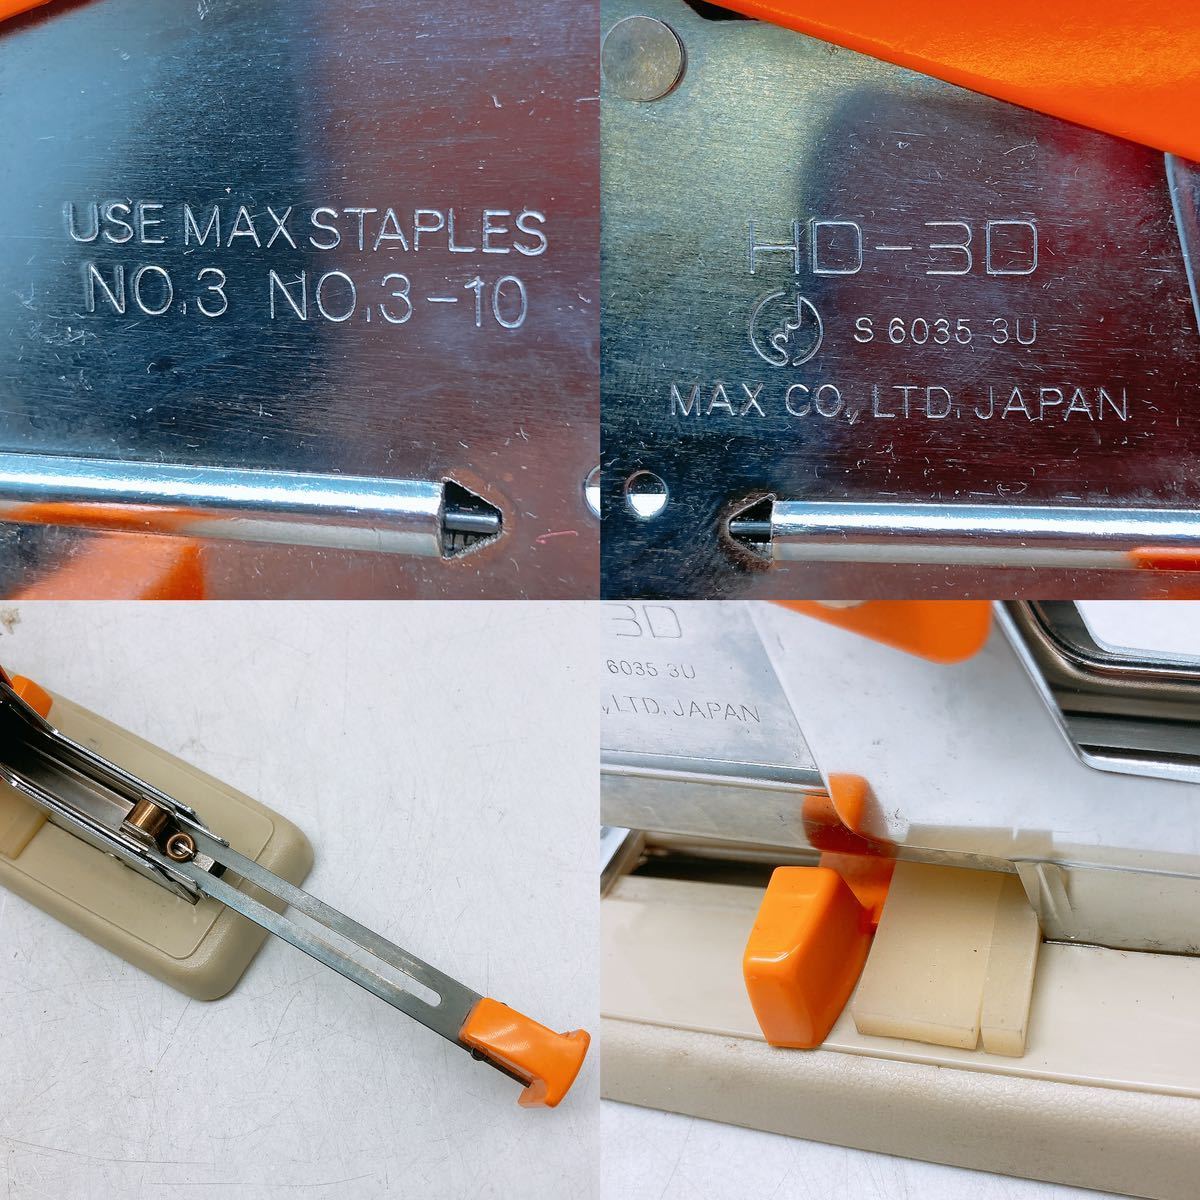  большой степлер MAX Max HD-3D игла :N3-10mm ho chi Kiss офисная работа сопутствующие товары настольный канцелярские товары бизнес степлер для бизнеса orange цвет Япония 